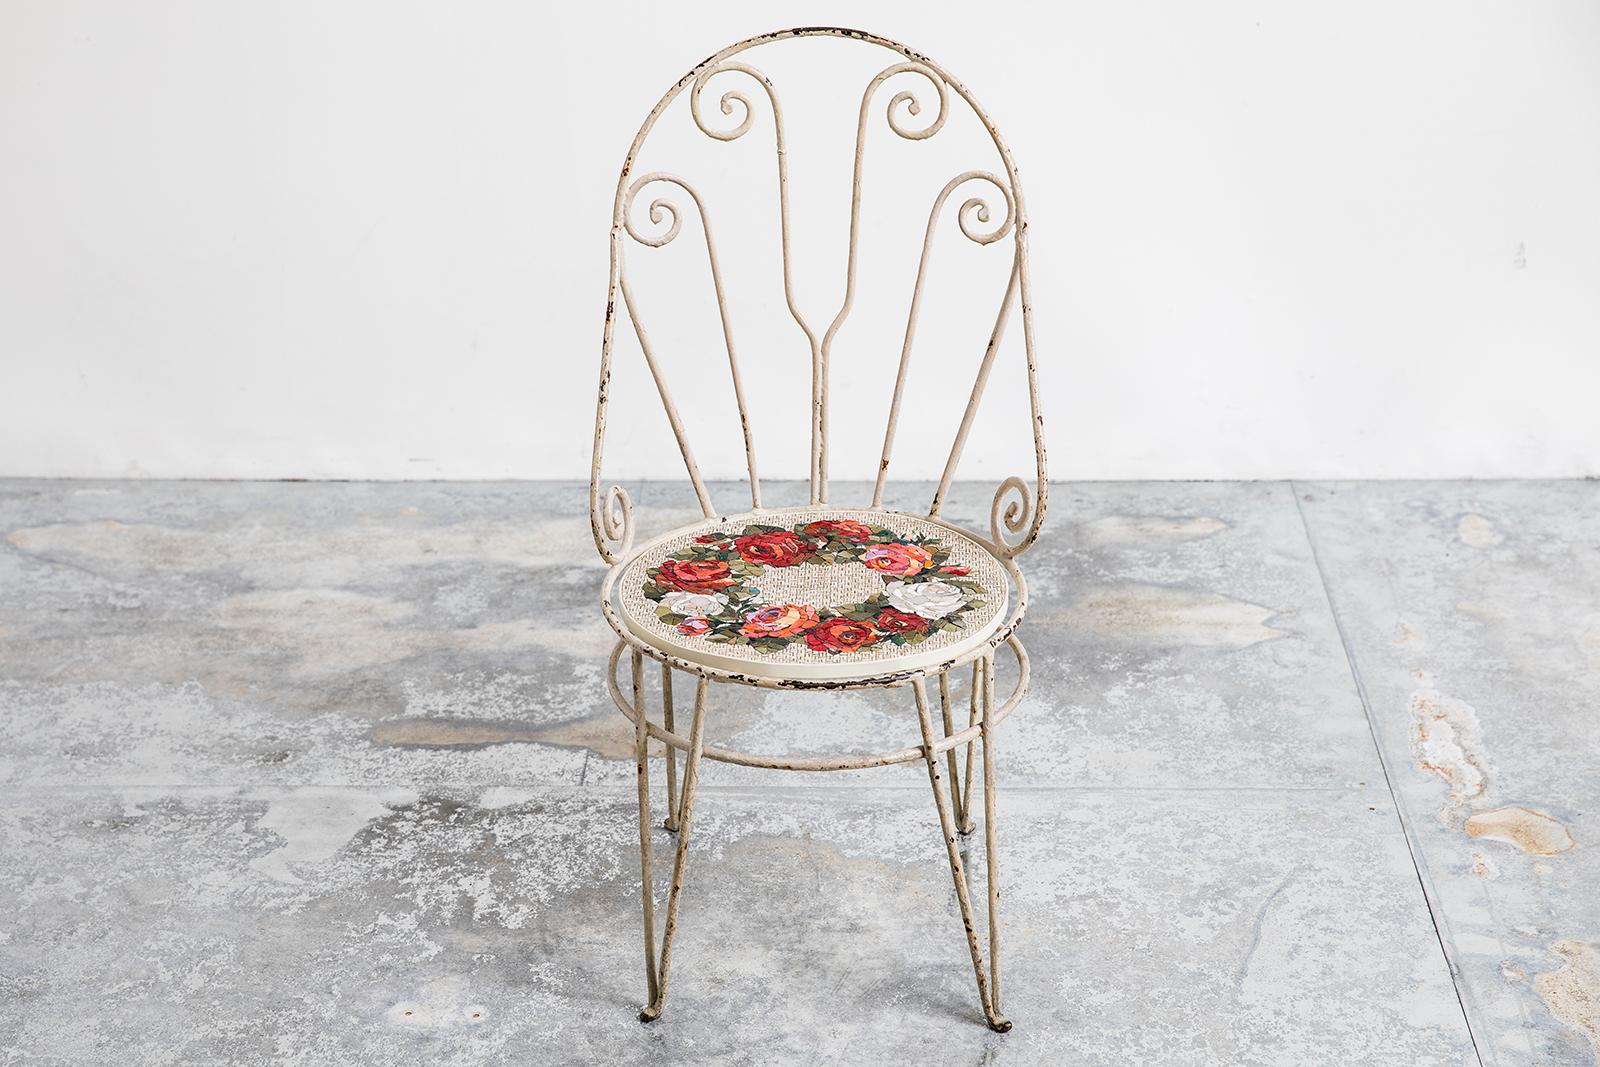 Sedia con Wreath Chaise en fer ancien par Yukiko Nagai
Dimensions : D44 x L43 x H89 cm
MATERIAL : Marbre, pierre naturelle, verre de couleur vénitienne, ciment, stuc, fer
Poids : 11 kg 

